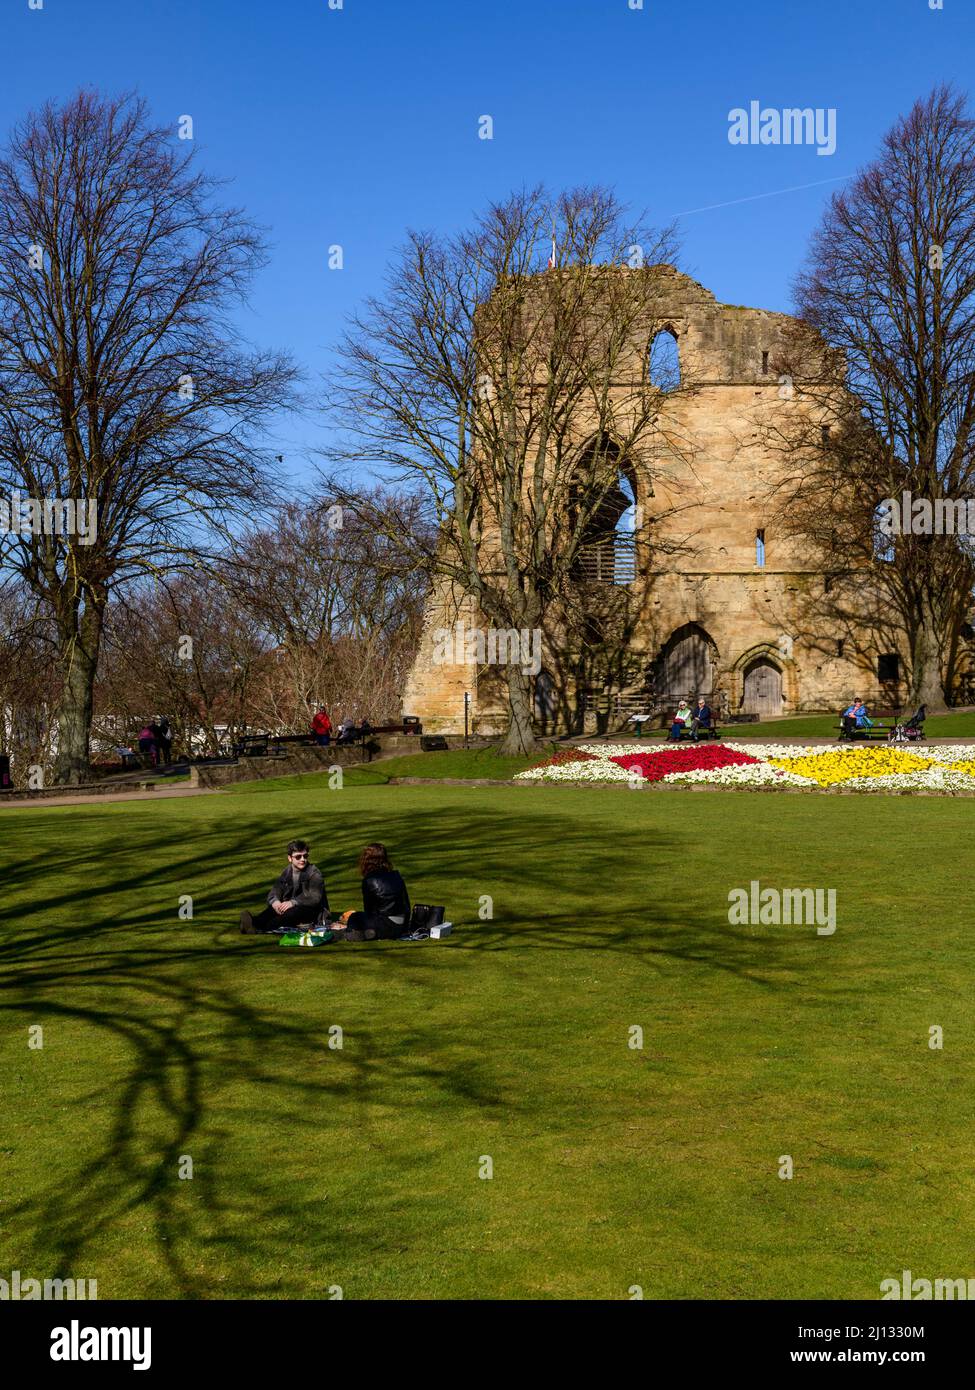 Personas que se sientan relajándose disfrutando del sol (brillantes flores fronterizas, antiguas ruinas de torre, cielo azul) - Castillo de Knaresborough, North Yorkshire, Inglaterra, Reino Unido. Foto de stock